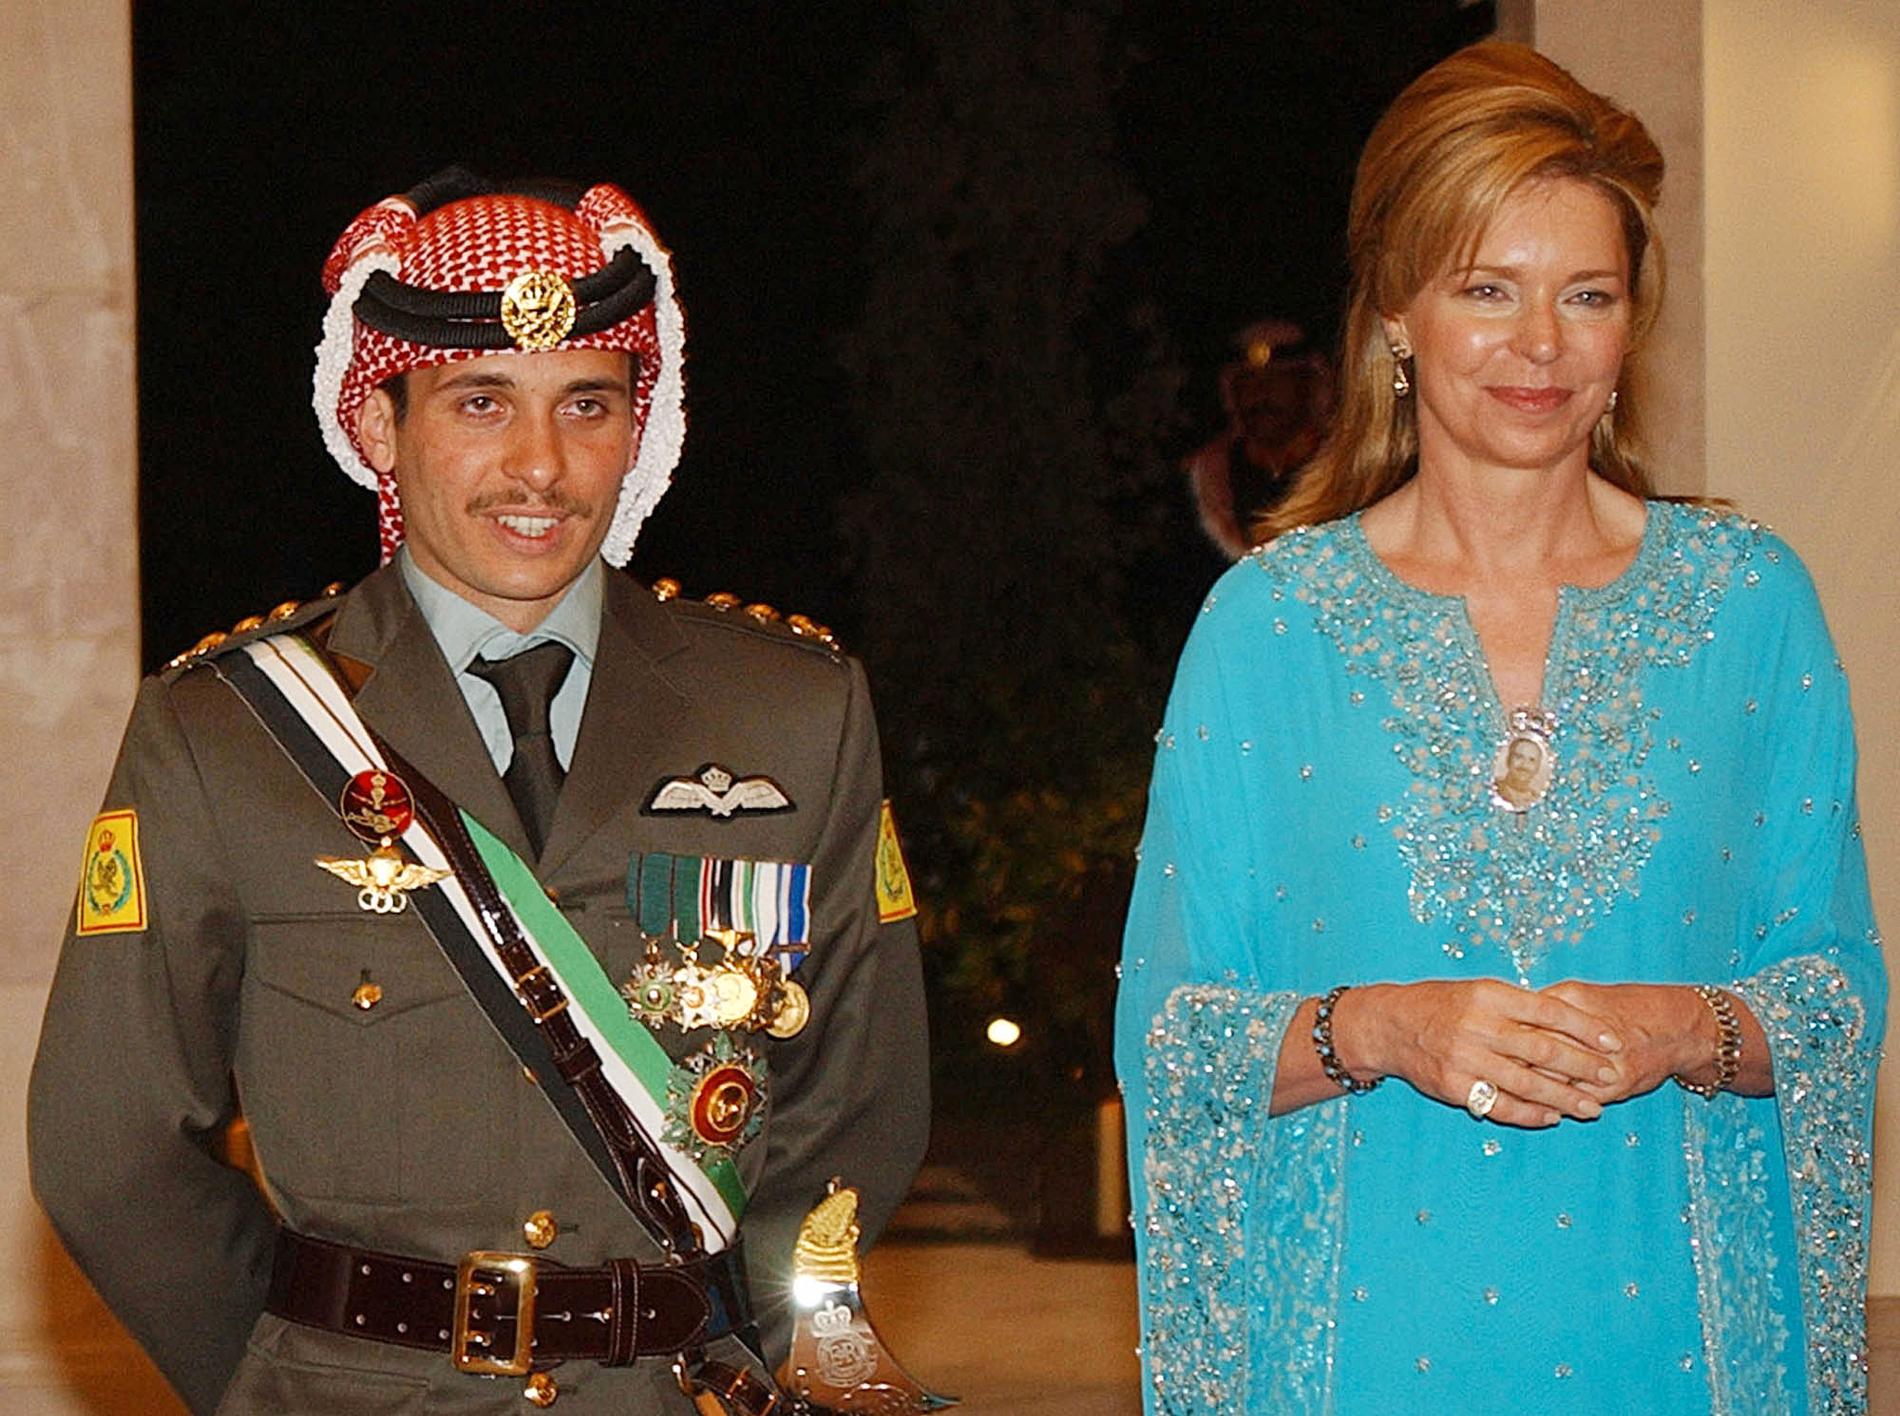 Prins Hamza tillsammans med sin mamma, drottning Noor, på ett bröllop i Amman 2004. Samma år fråntogs Hamza sin titel som Jordaniens kronprins, vilket sådde split inom kungafamiljen.